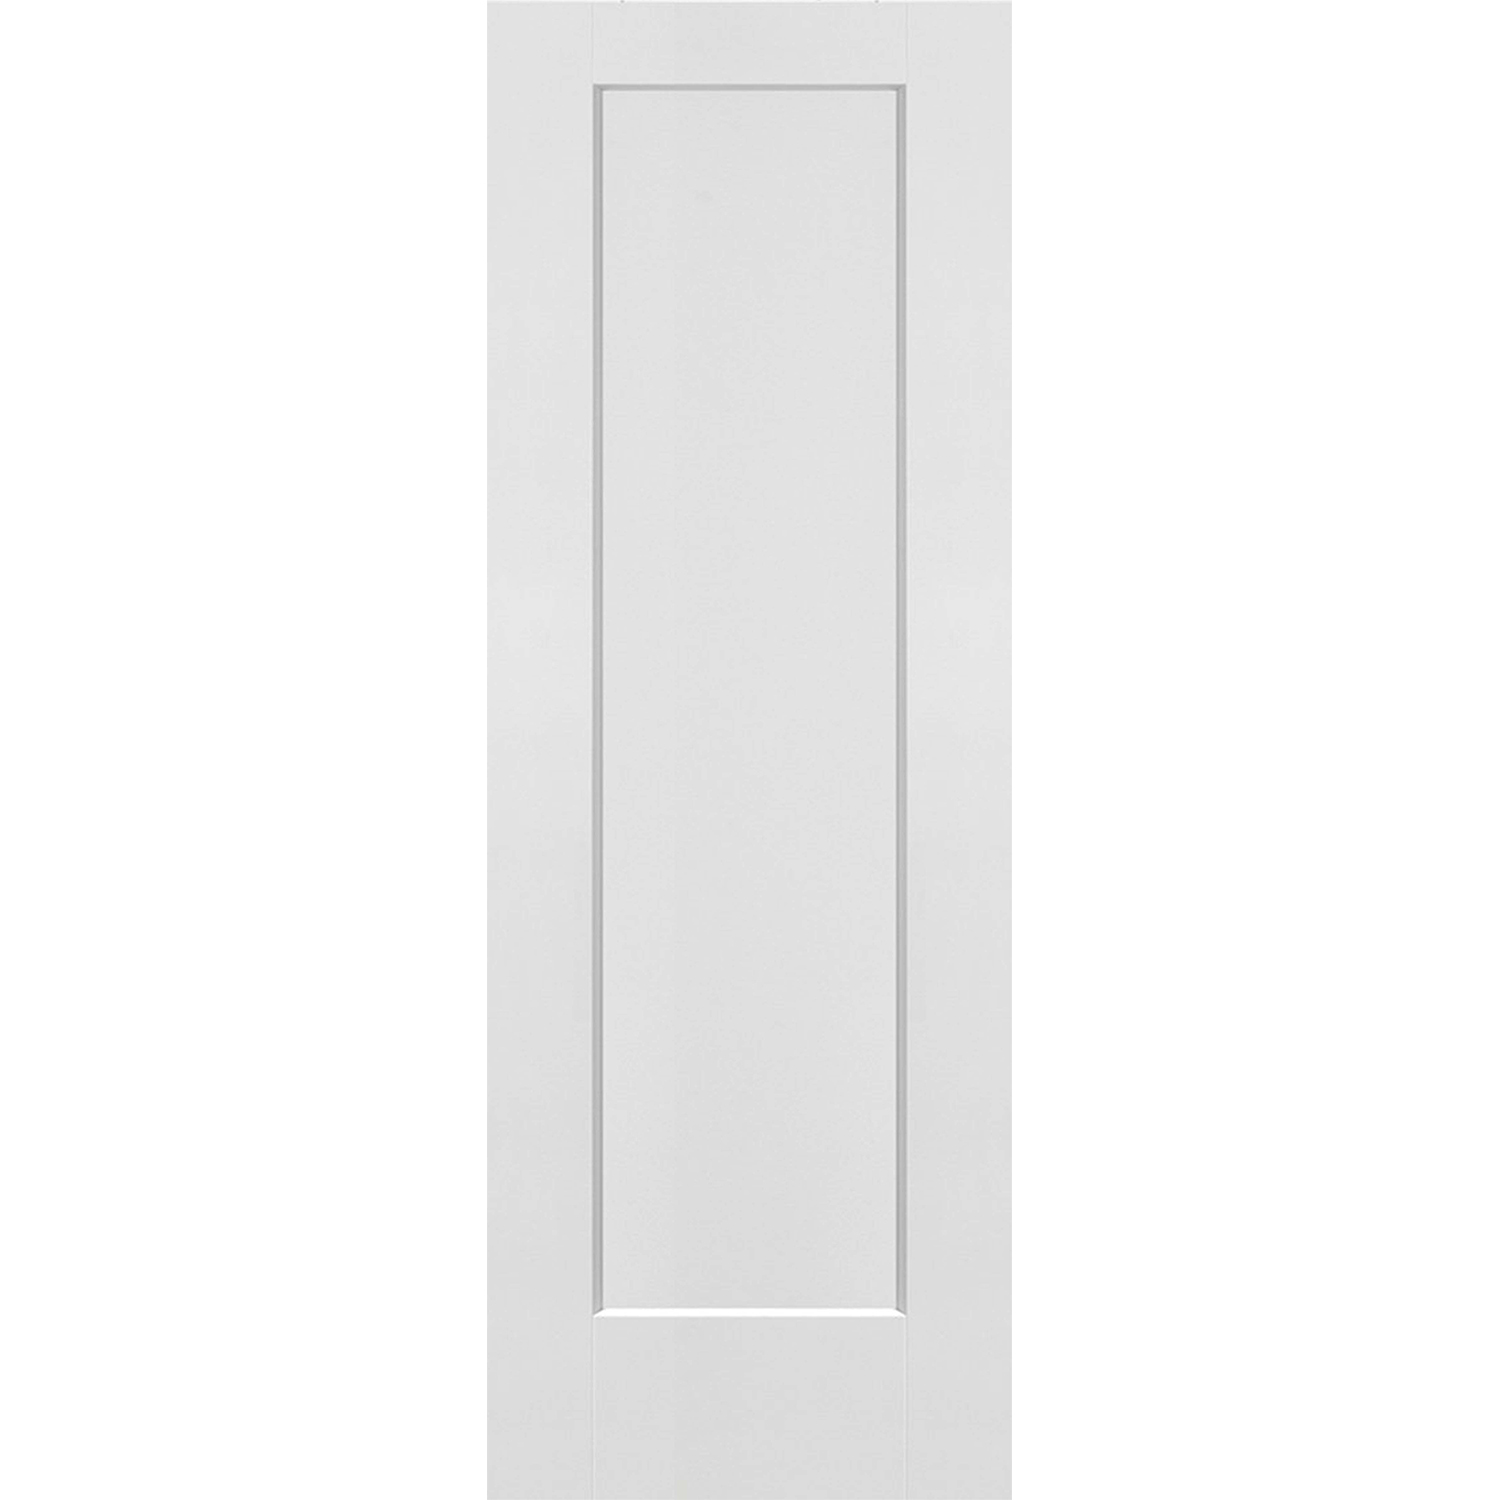  1 Panel Shaker Door (Solid Core) - 28 x 80